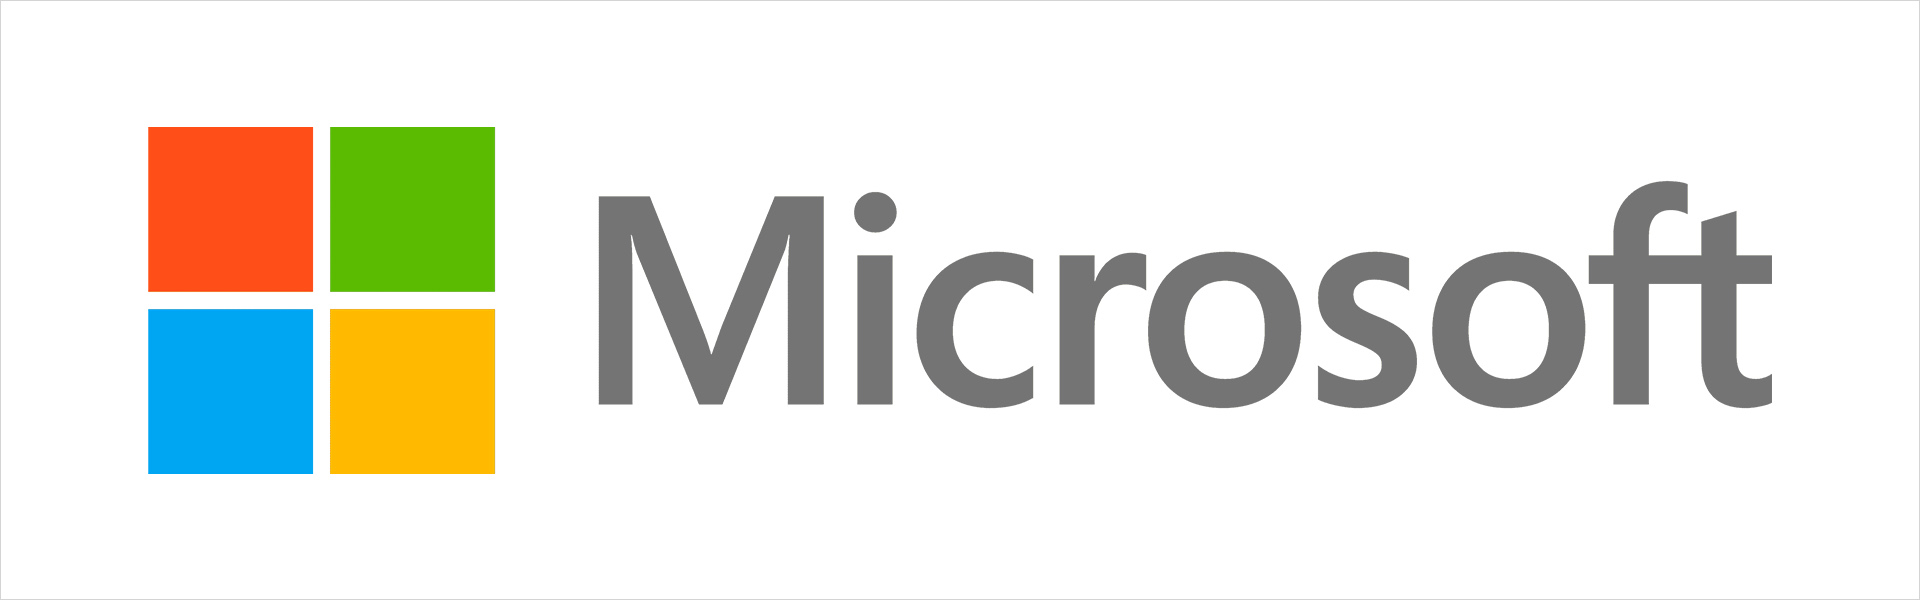 Microsoft arrface Pro 7 (VDV-00019) Microsoft